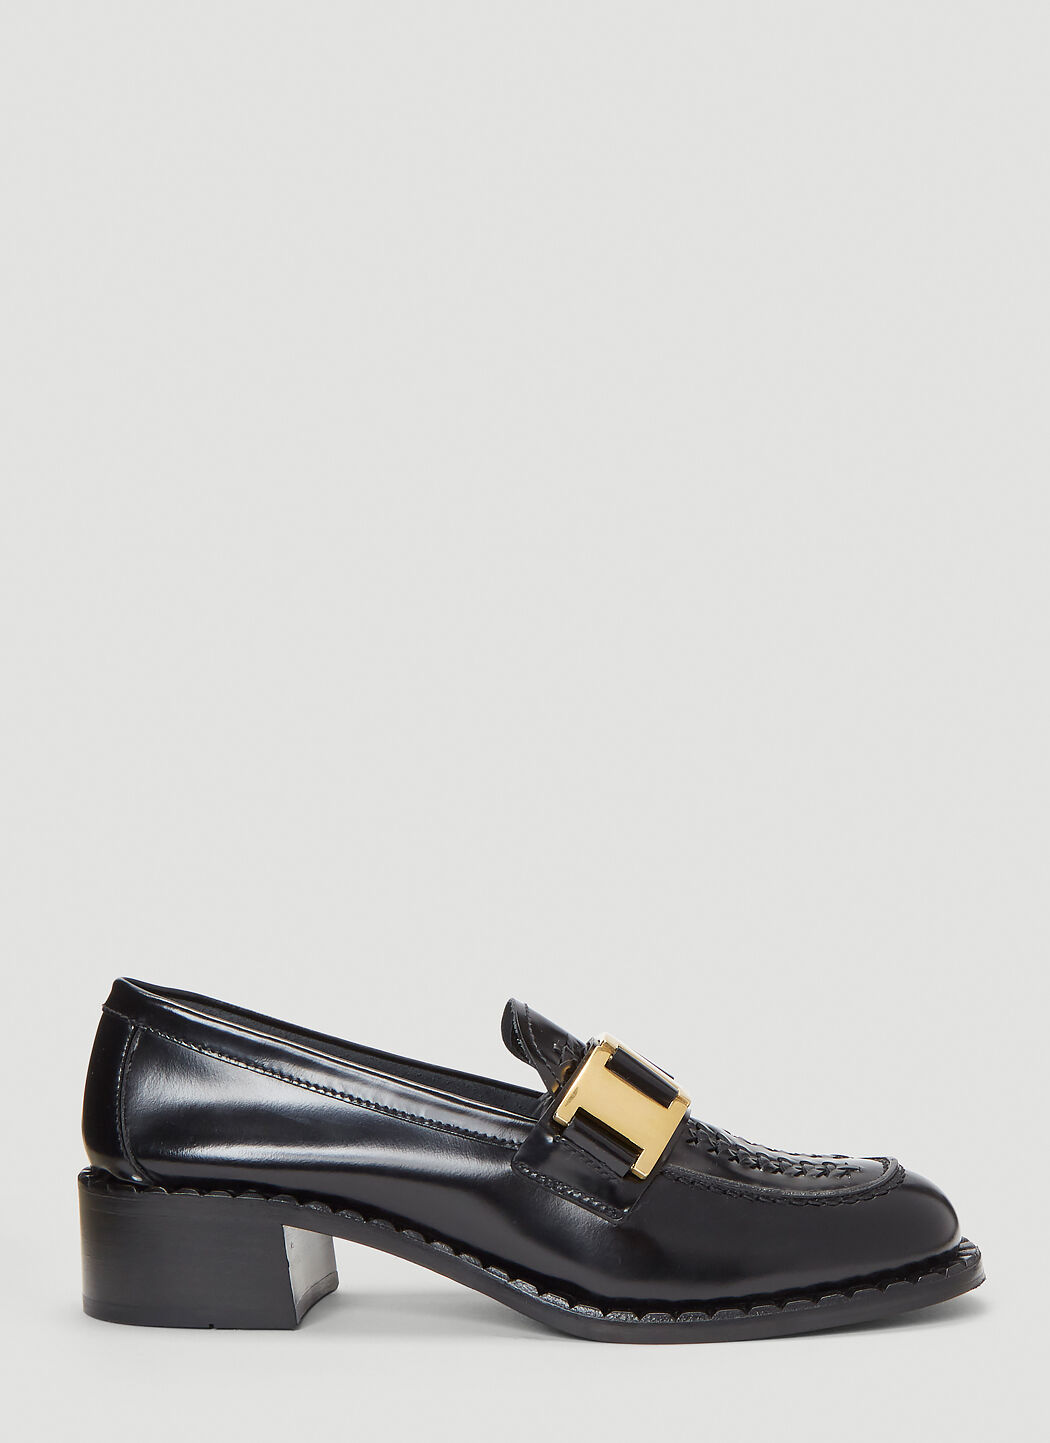 Paula Canovas del Vas Buckle Moccasin Shoes Black pcd0254012